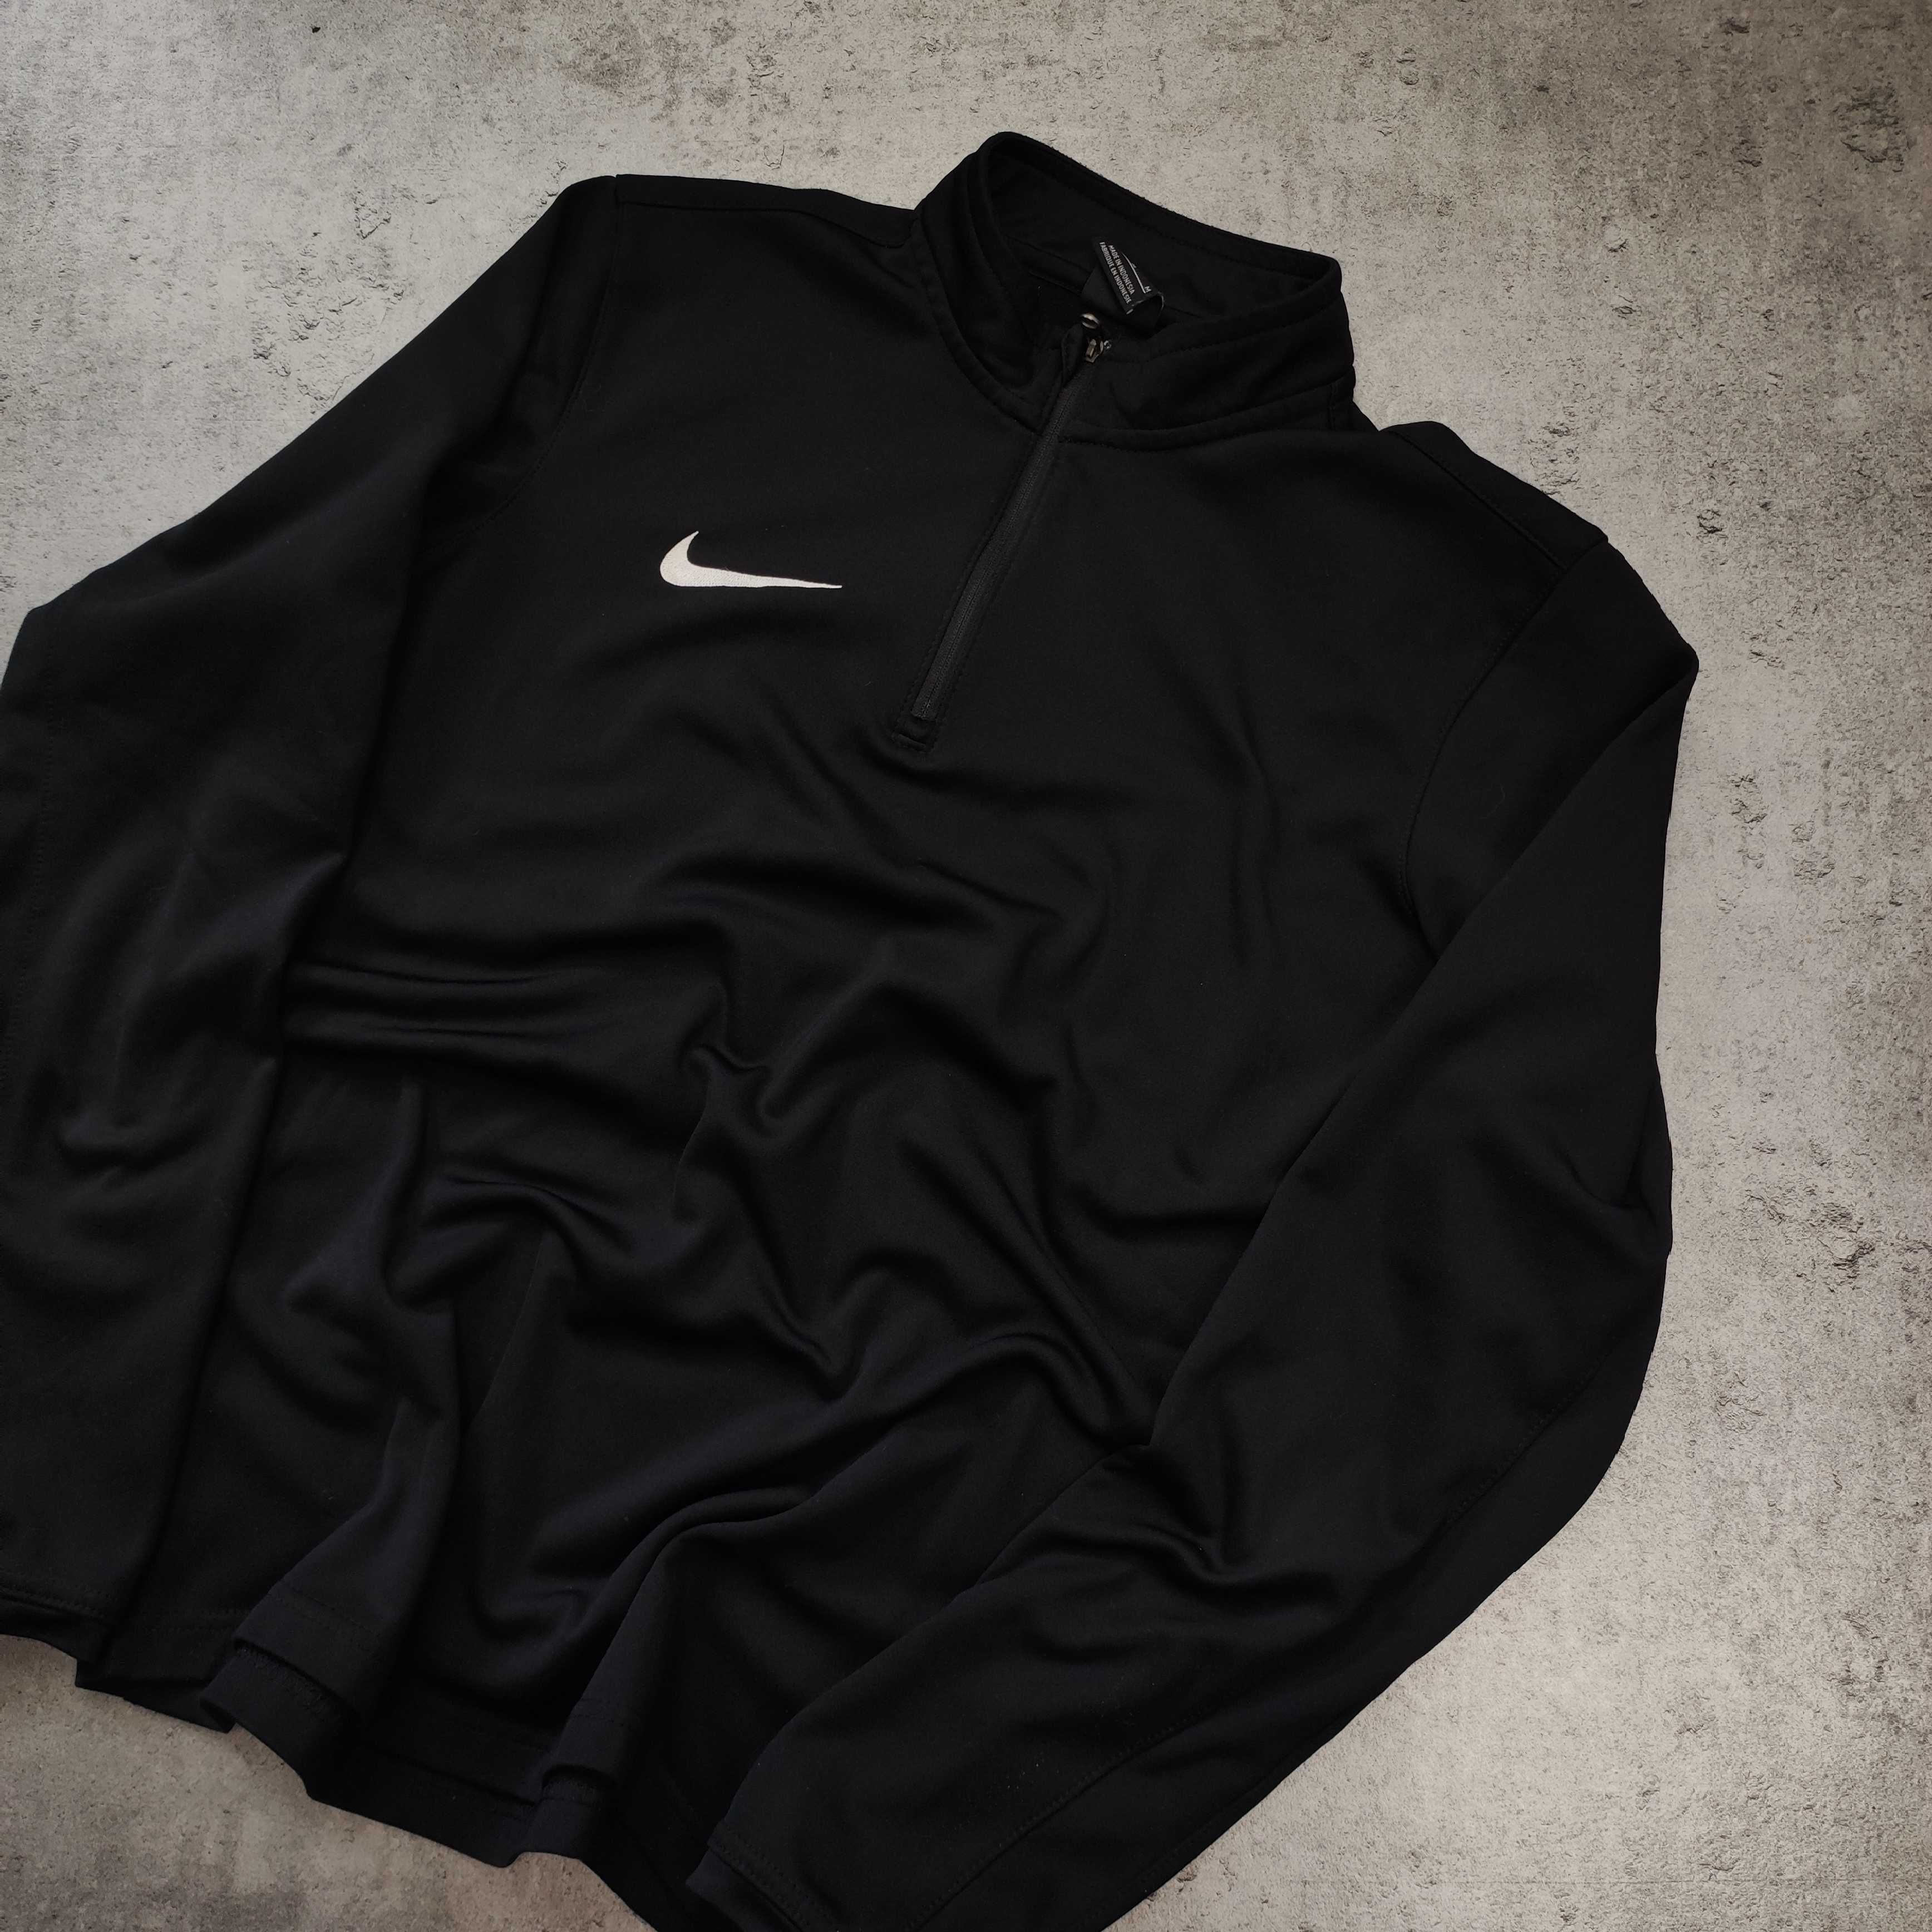 MĘSKA Bluza Sportowa Termiczna Dri-Fit Thermal Nike Biegowa Siłownia